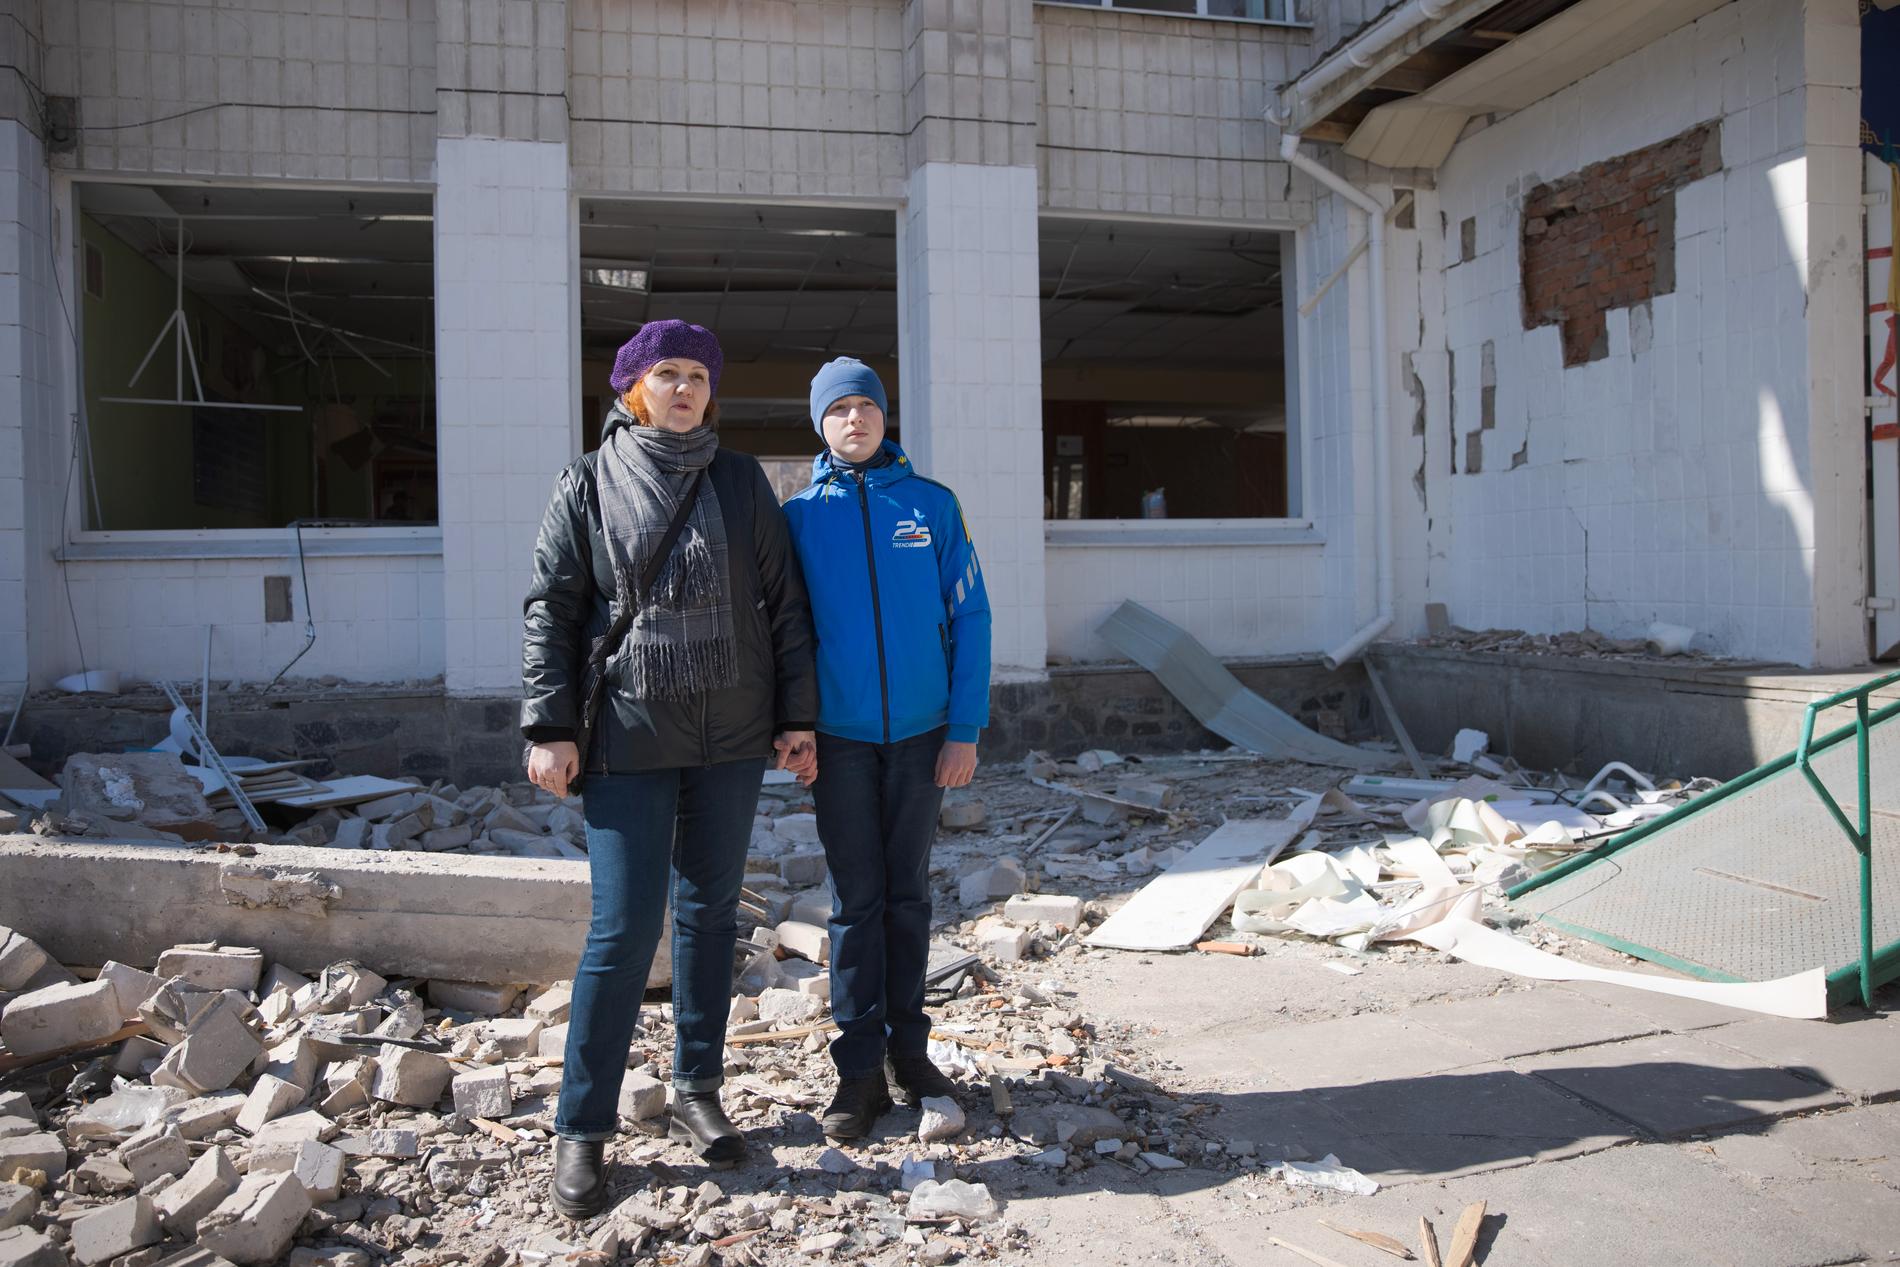 Svetlana Yaropovets, 44, med sin son Yevgienij, 14, utanför skolan som blev bombad. Svetlana har själv varit elev i skolan. 